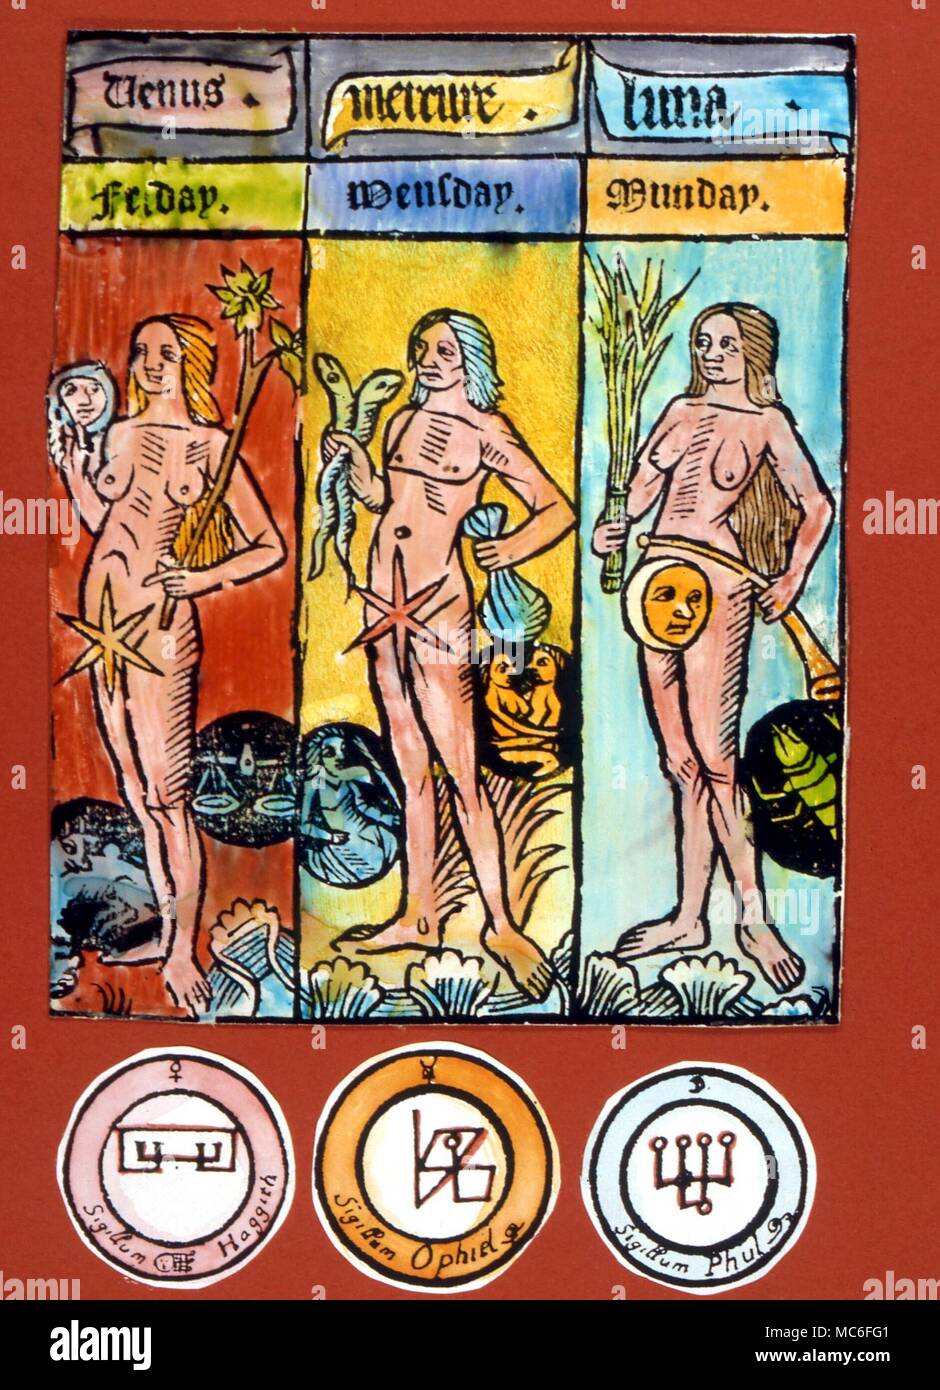 Los planetas - espíritus planetarios (círculos) inferior para los Sigils planetario o espíritus Olímpico, con el planetario sigil (arriba), el nombre (abajo) y demoníaca sigil (centro). De izquierda a derecha, y Phul Hagith, Ophiel (de Venus, Mercurio y Luna, respectivamente) Foto de stock